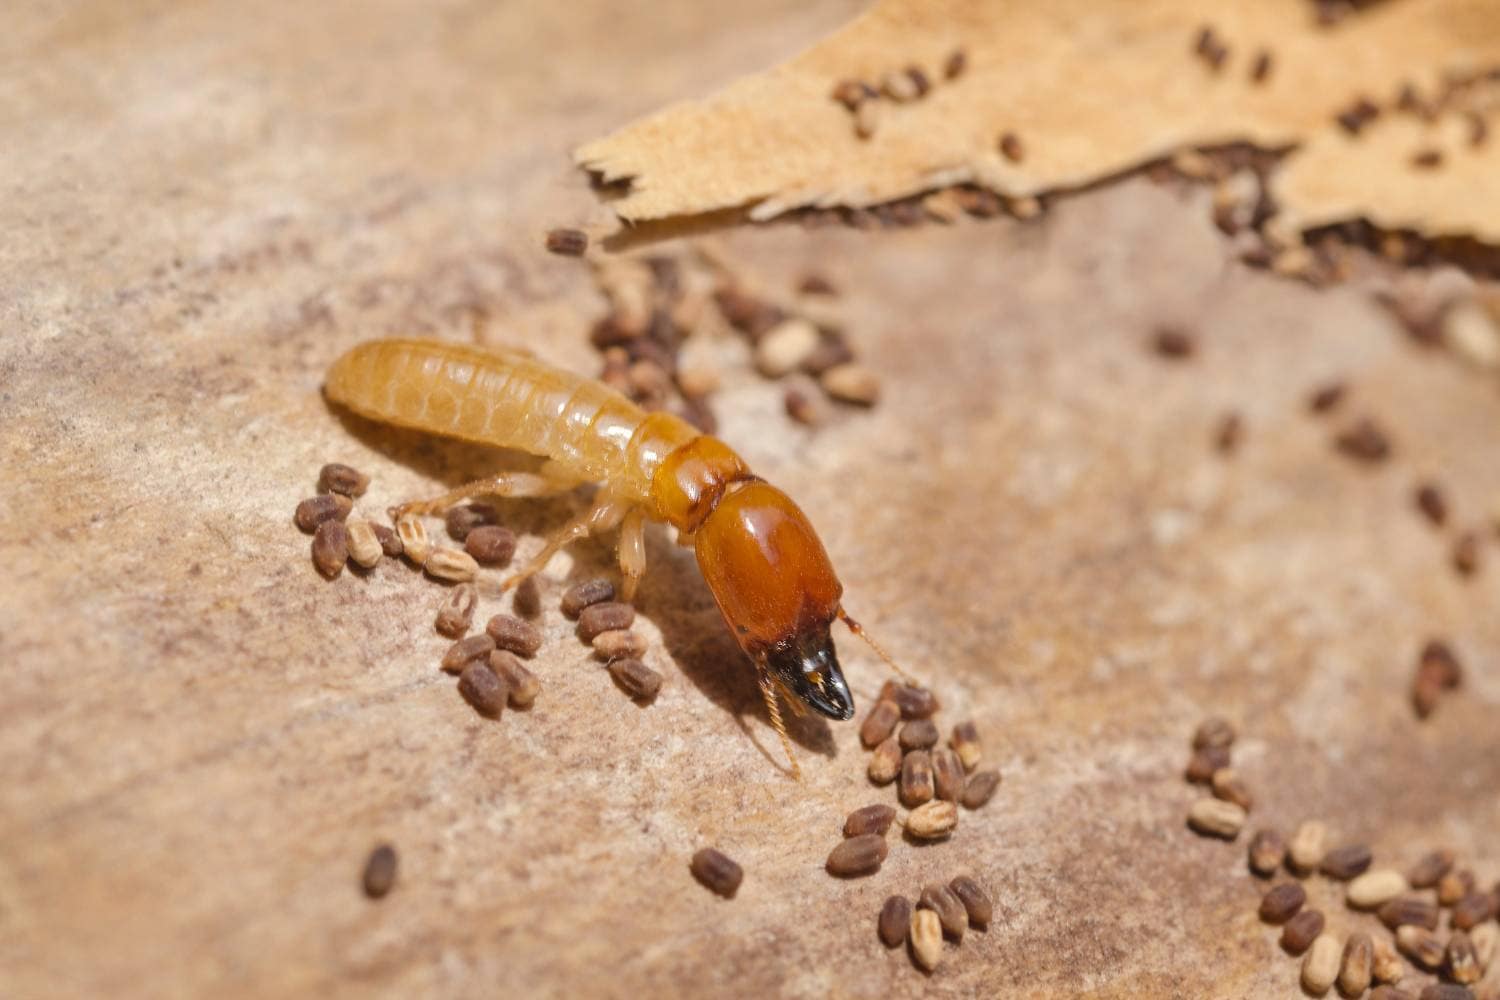 examining termite swarms 2